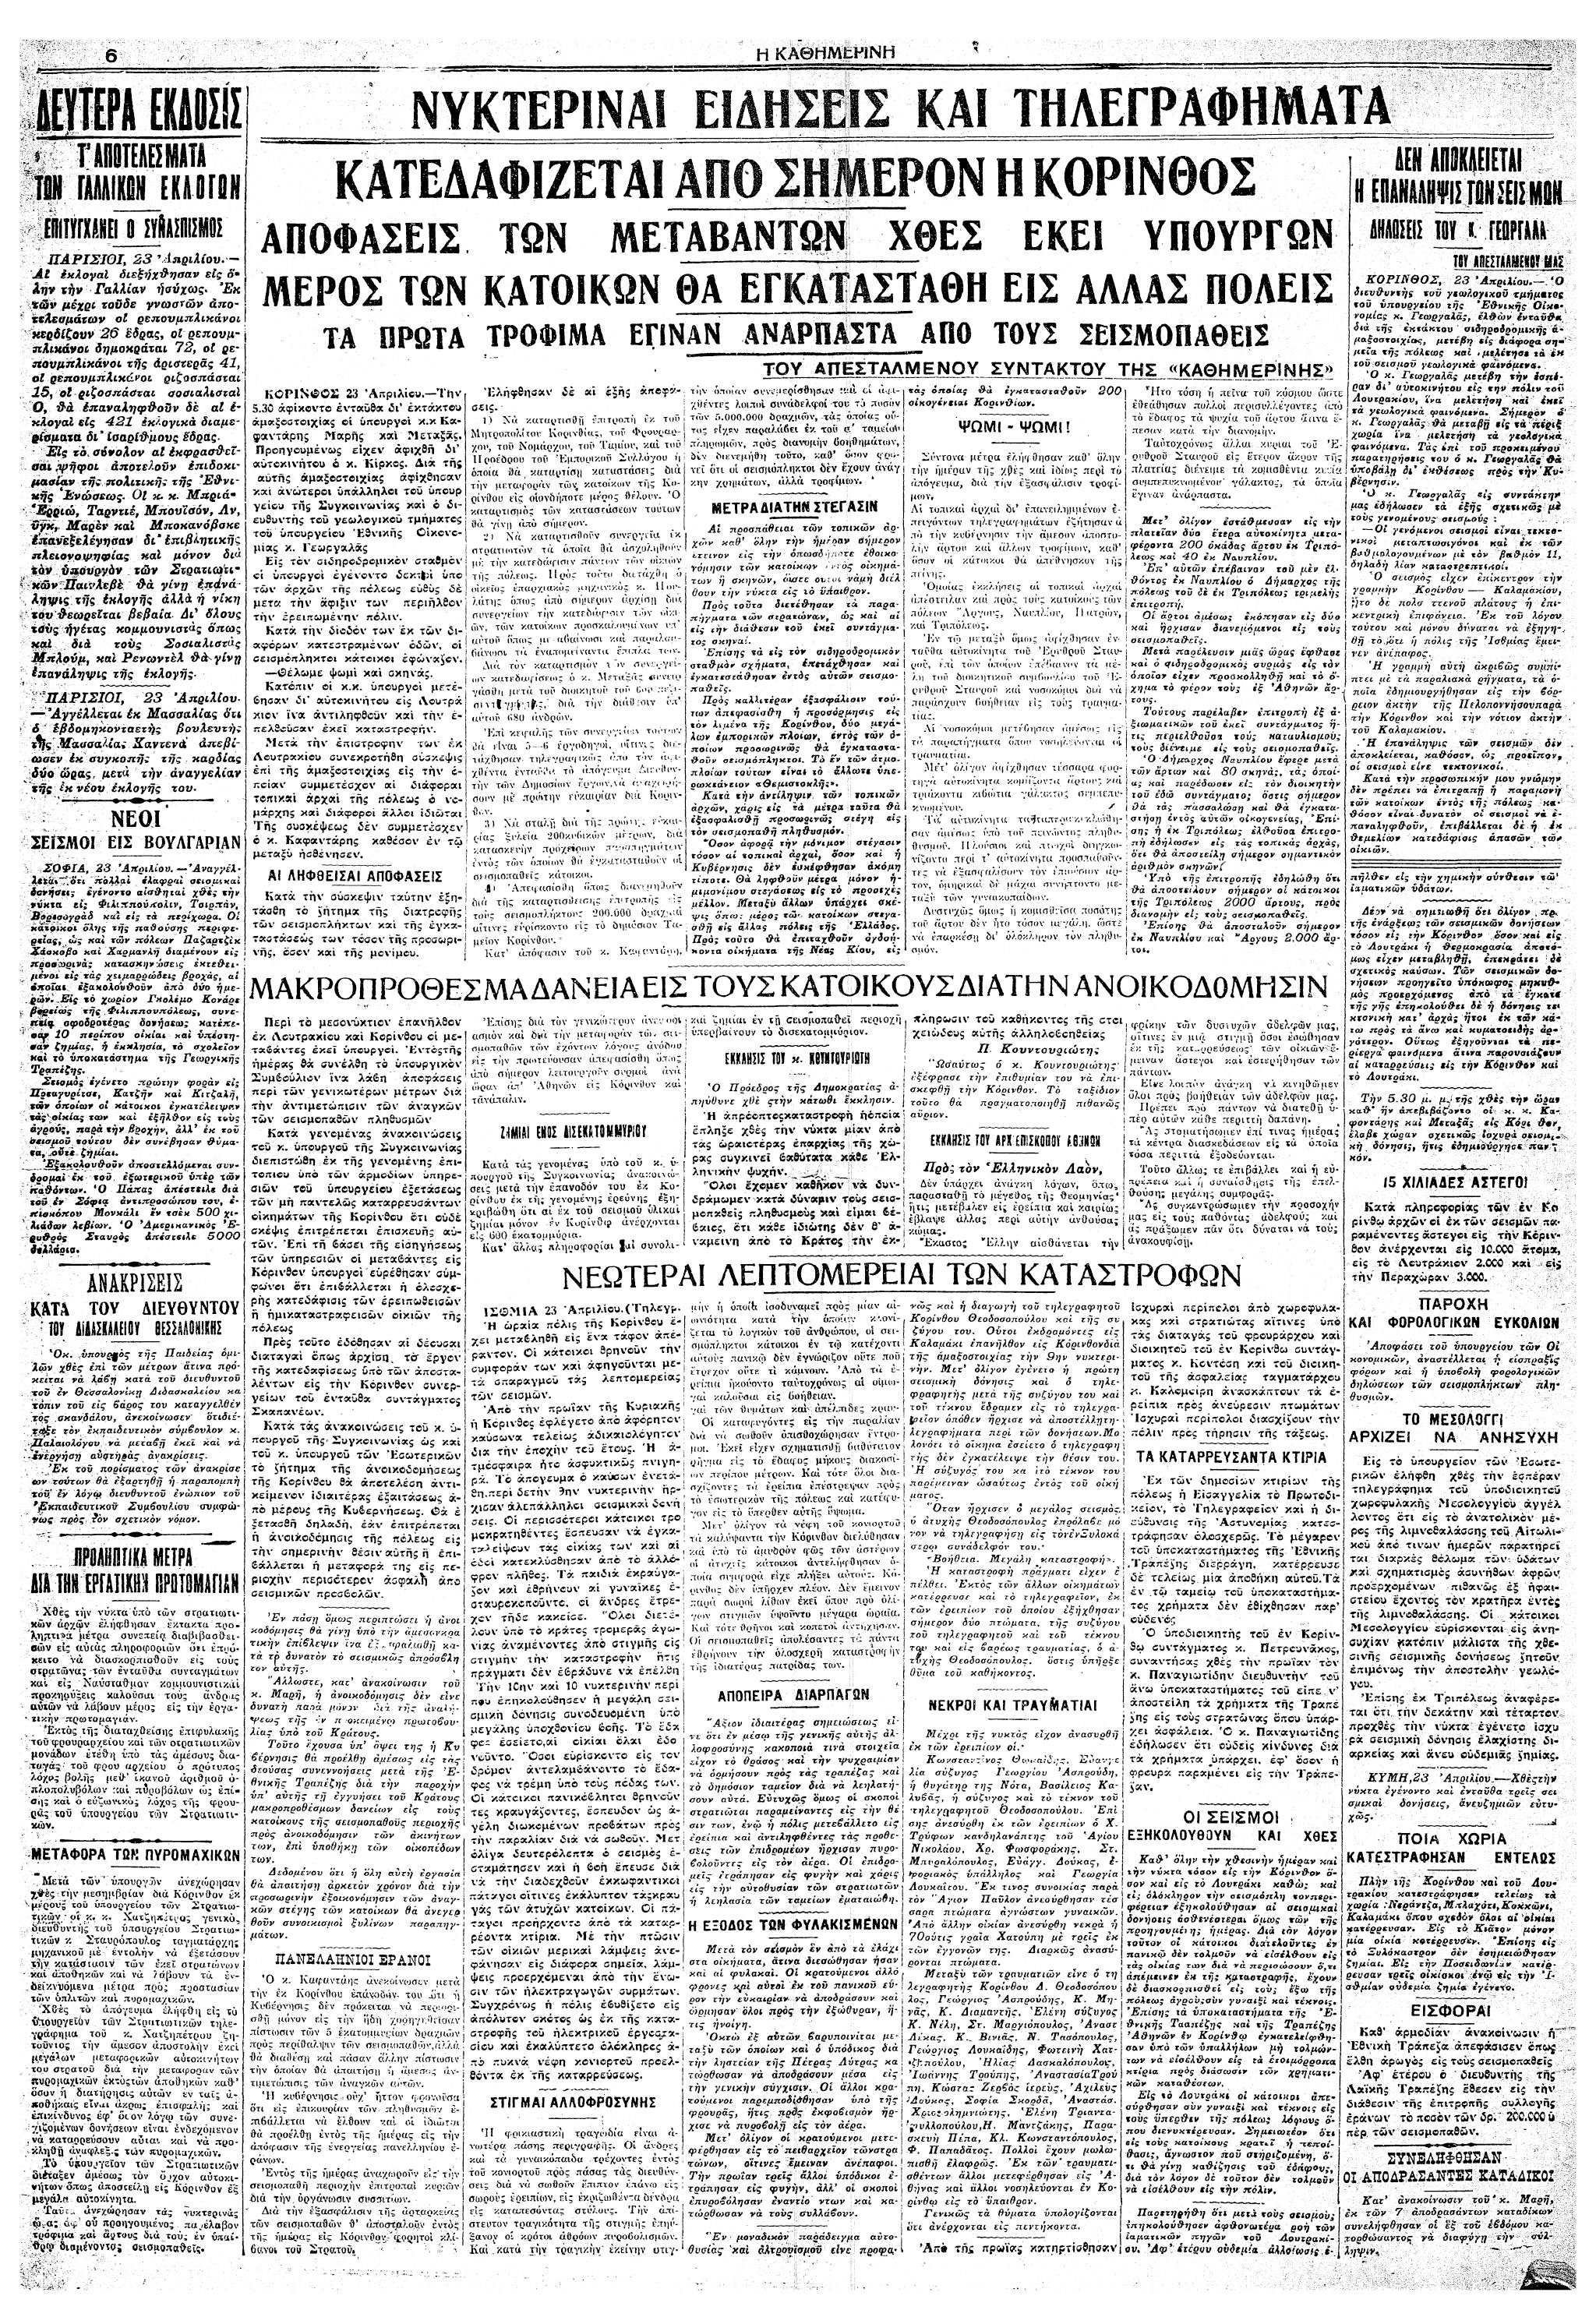 Σαν σήμερα: 22 Απριλίου 1928 – Ο μεγάλος σεισμός της Κορίνθου-4